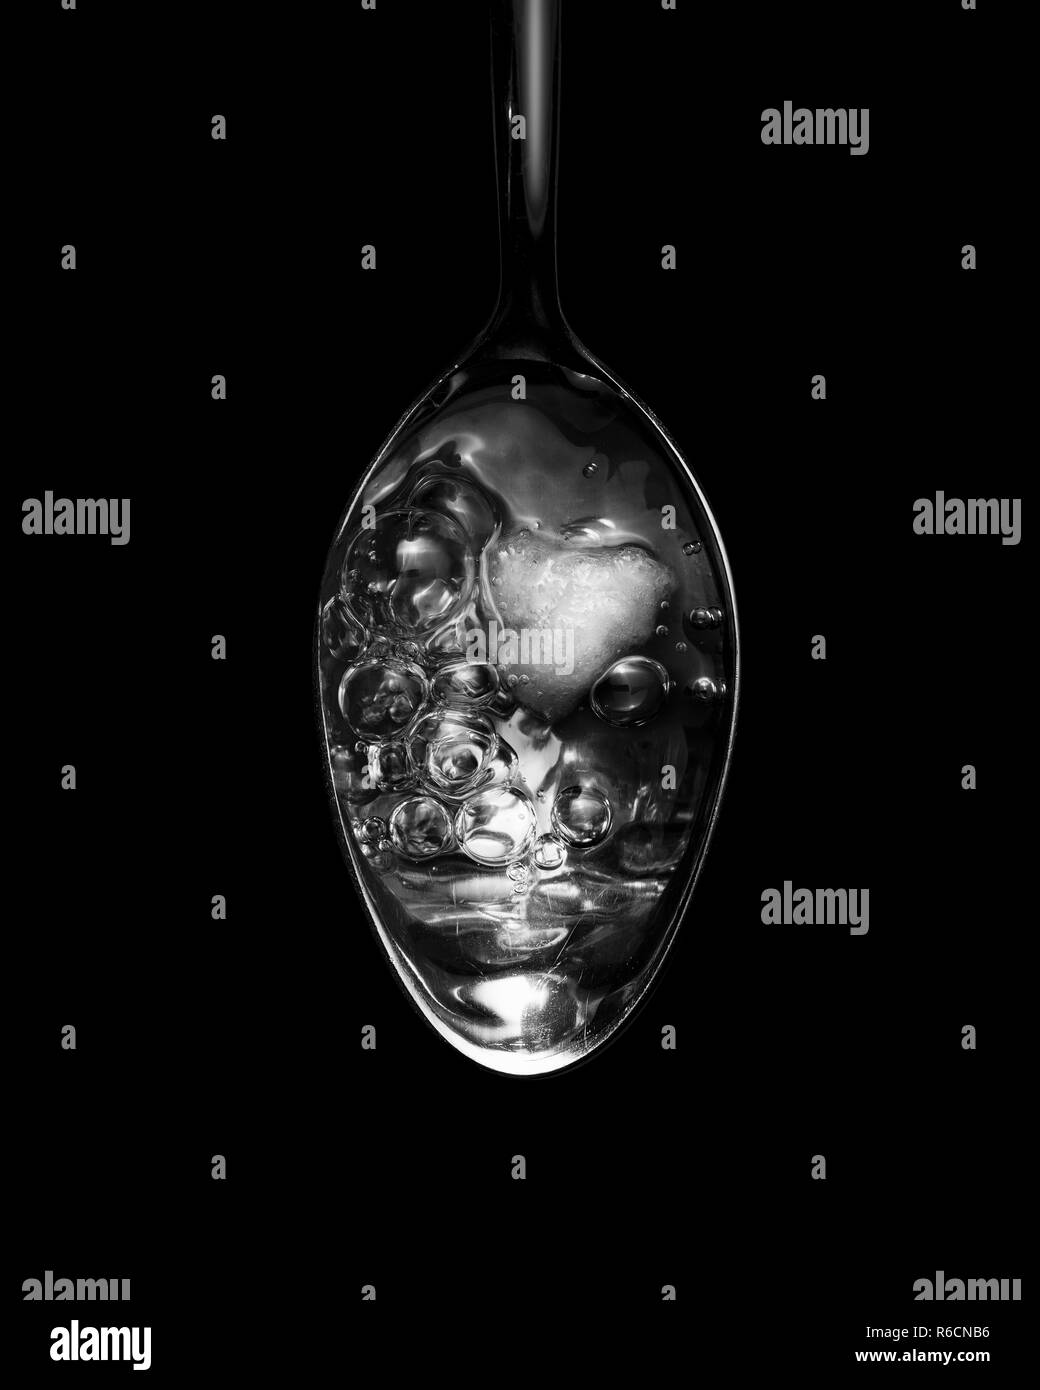 Vue en noir et blanc de l'image ci-dessus du liquide bouillonnant dans une cuillère Banque D'Images